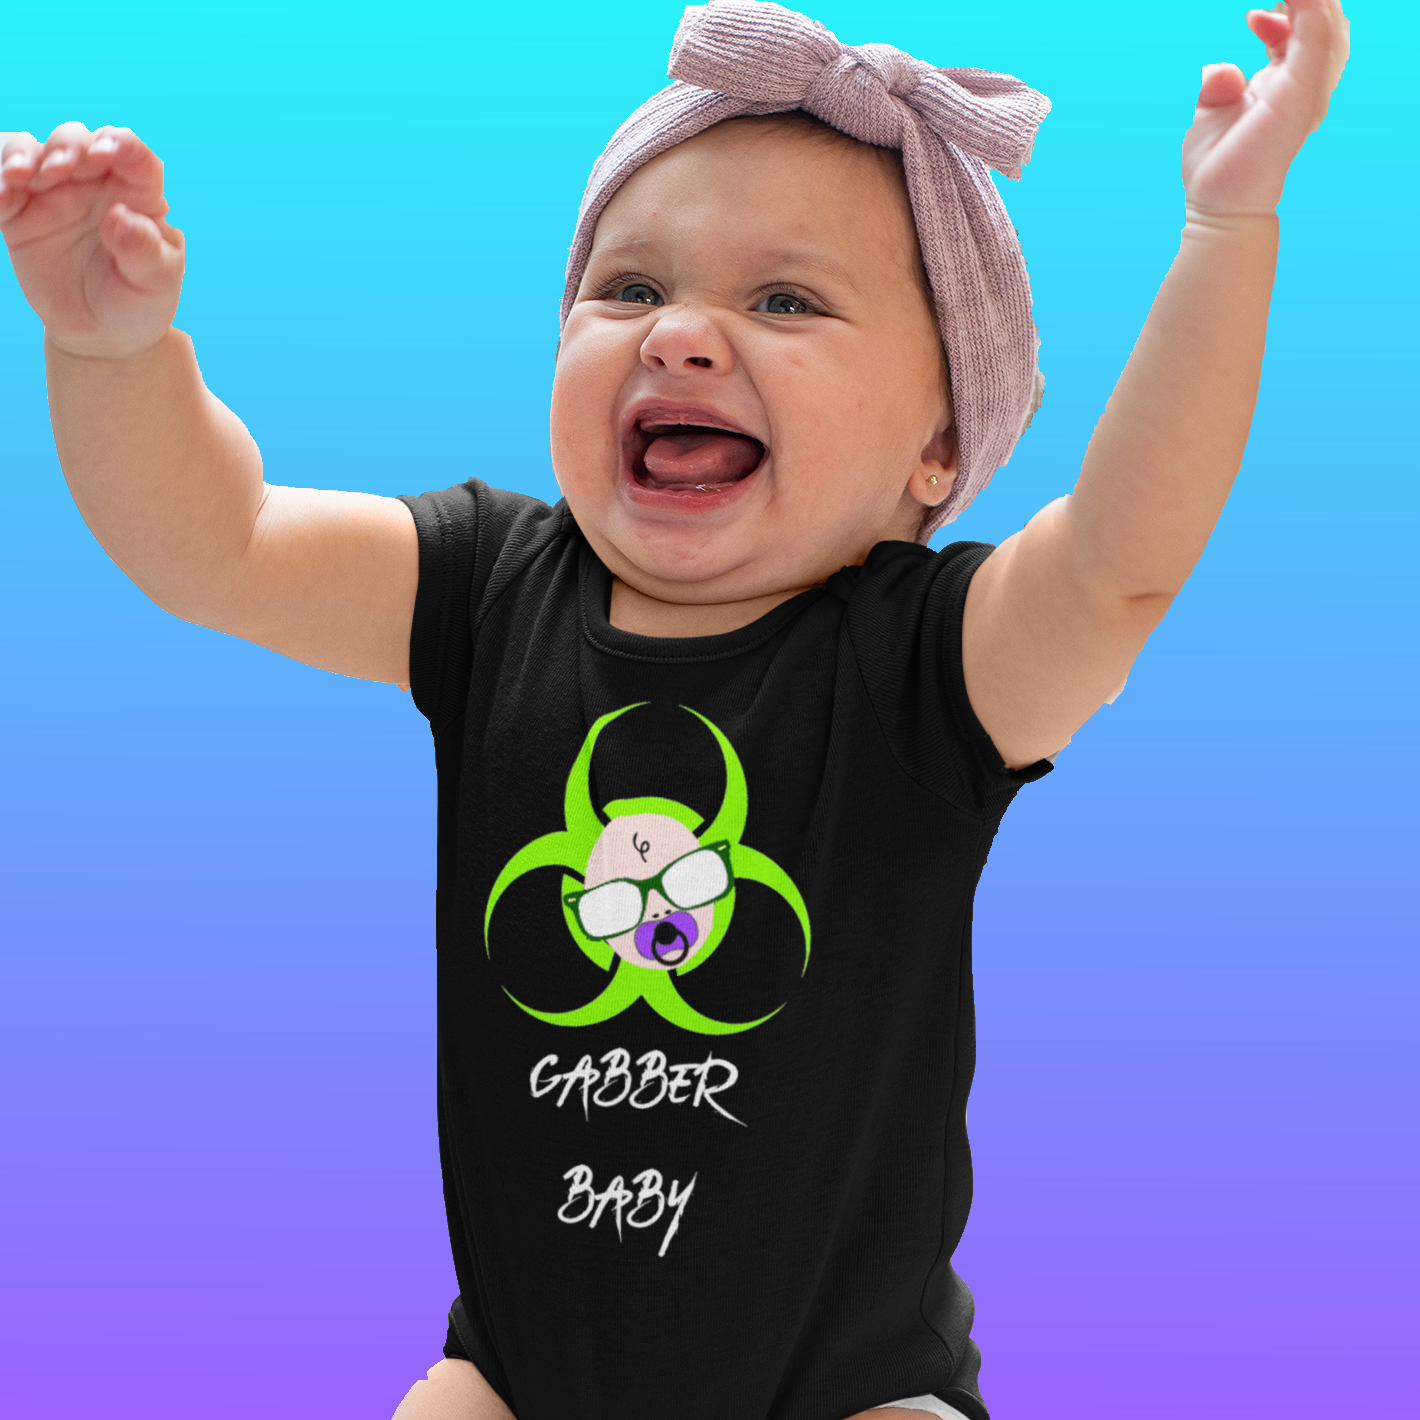 Gaber Baby onesie rave inspired design.